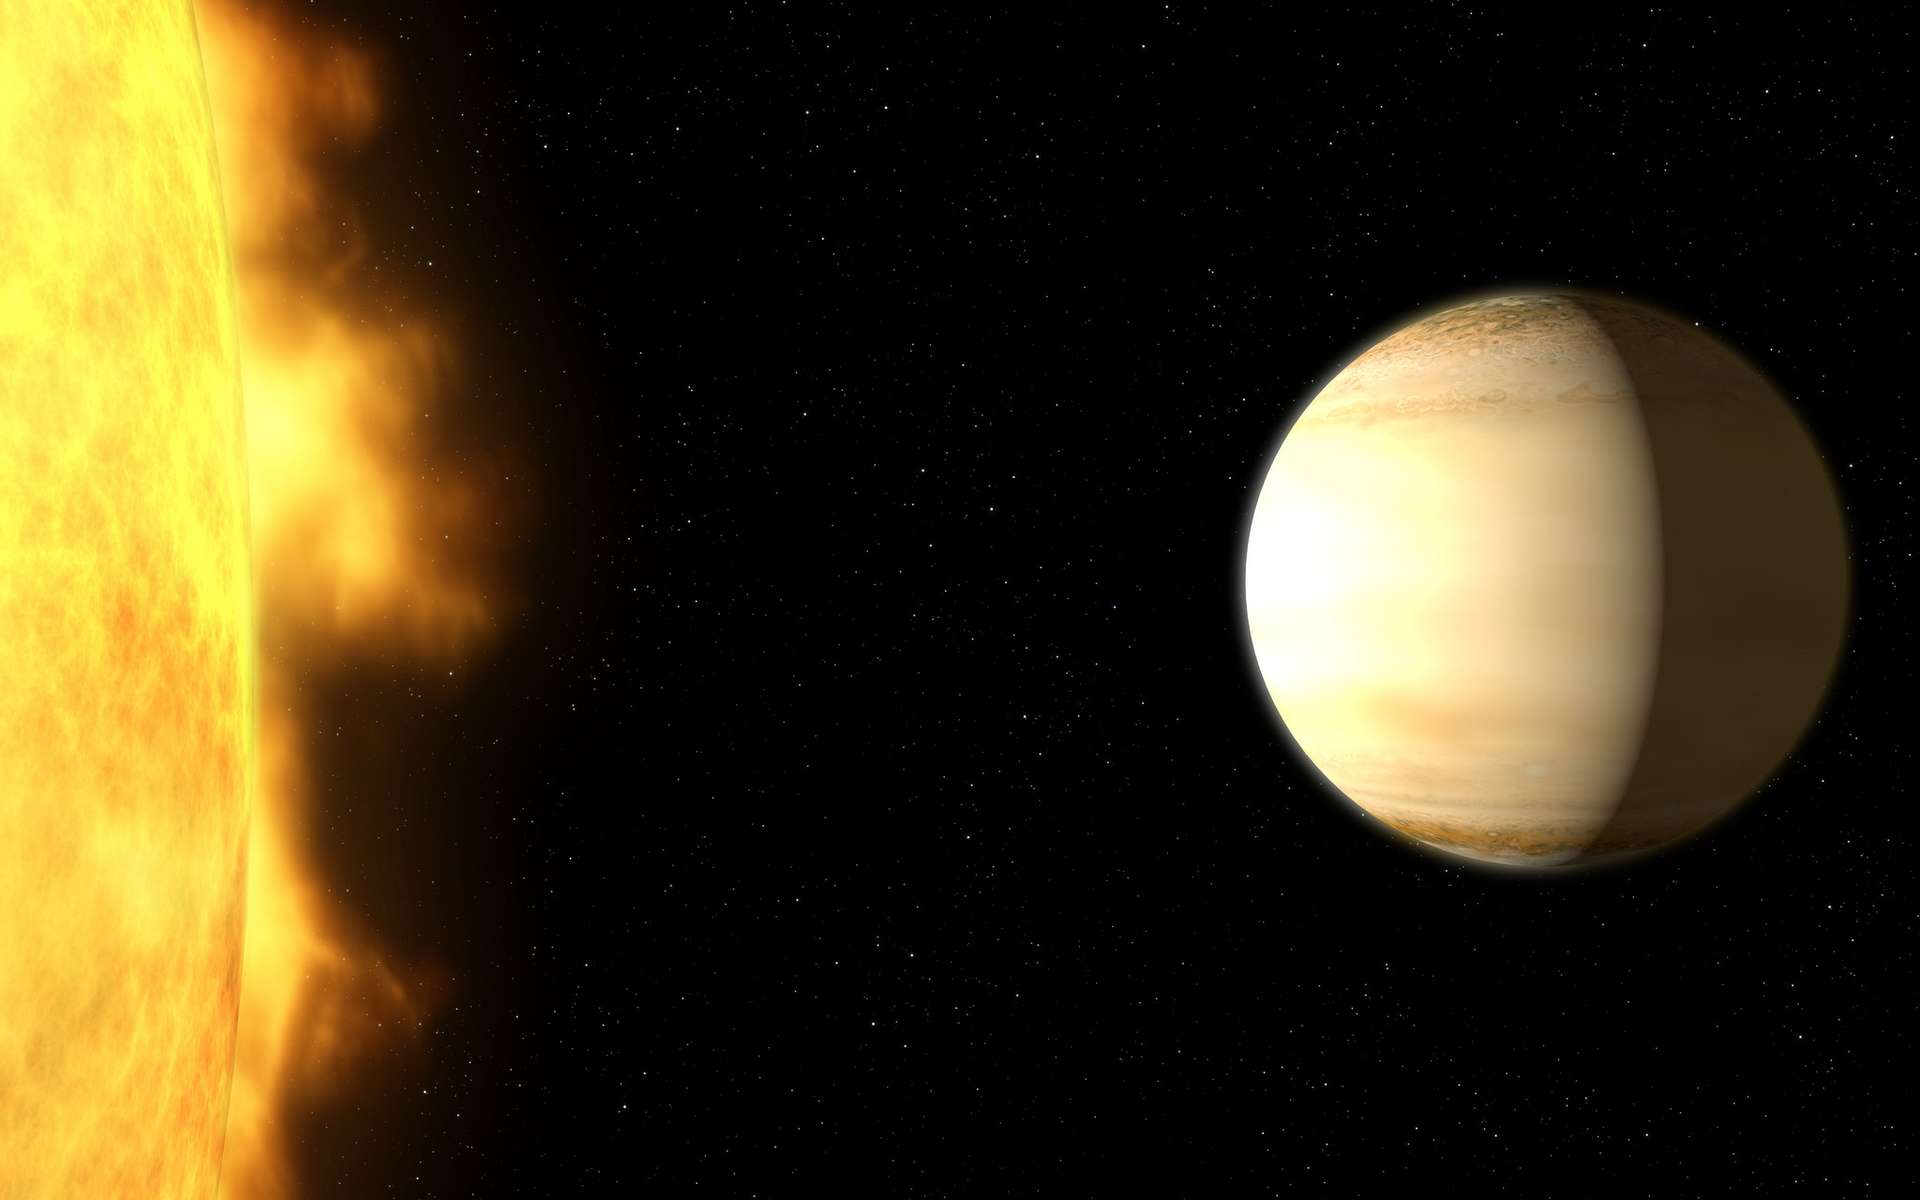 Le télescope James-Webb a disséqué avec des détails sans précédent l’atmosphère d’une exoplanète